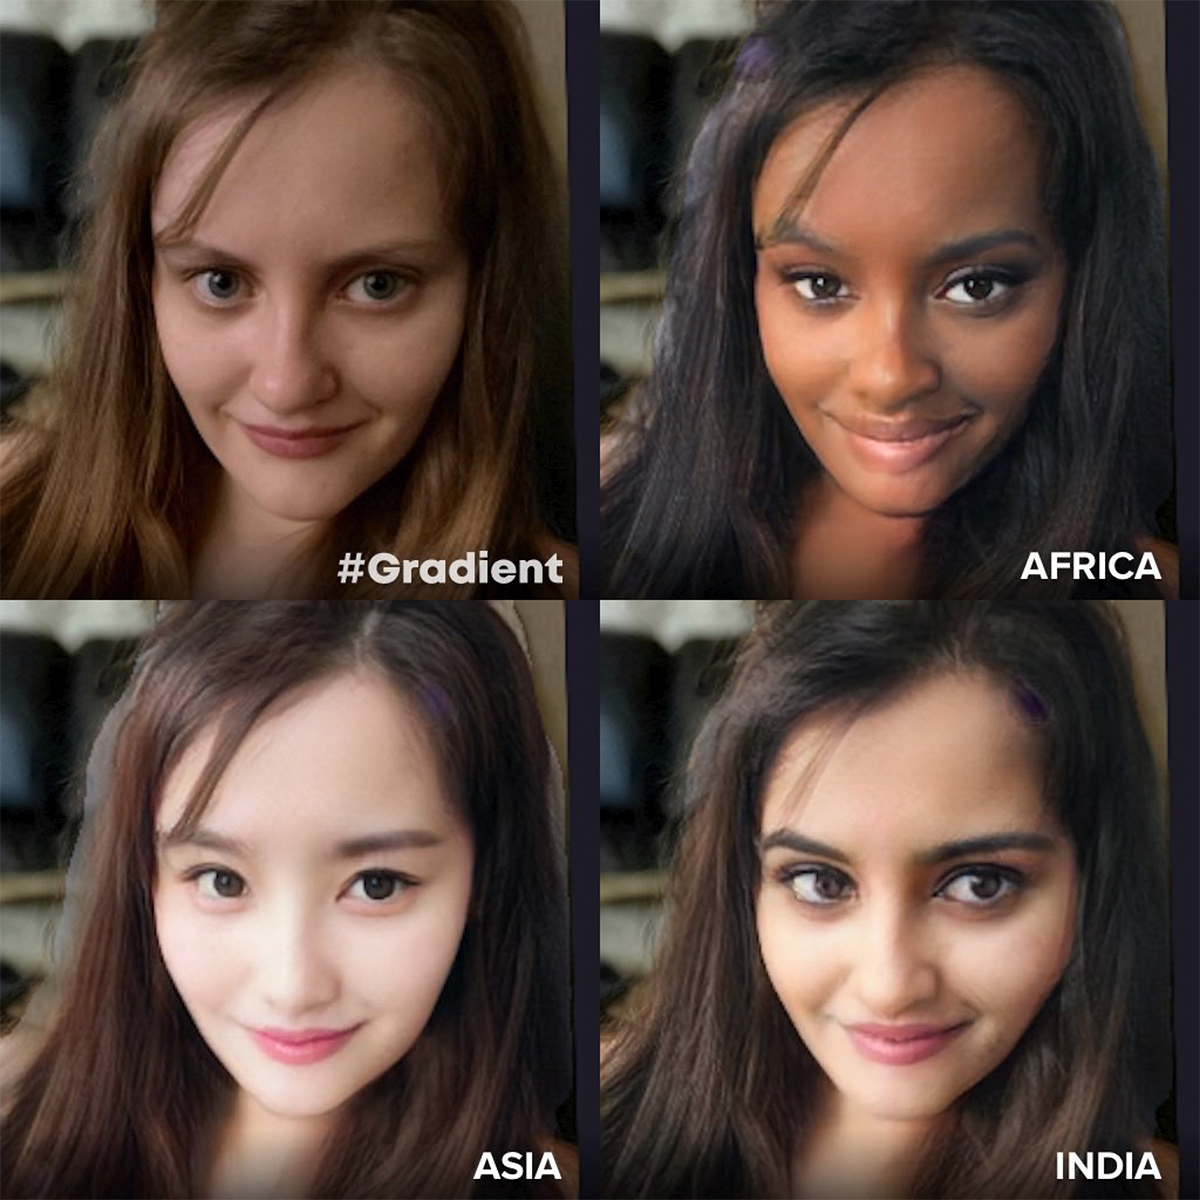 В приложение Gradient можно создать африканскую версию себя. Это сочли оскорбительным